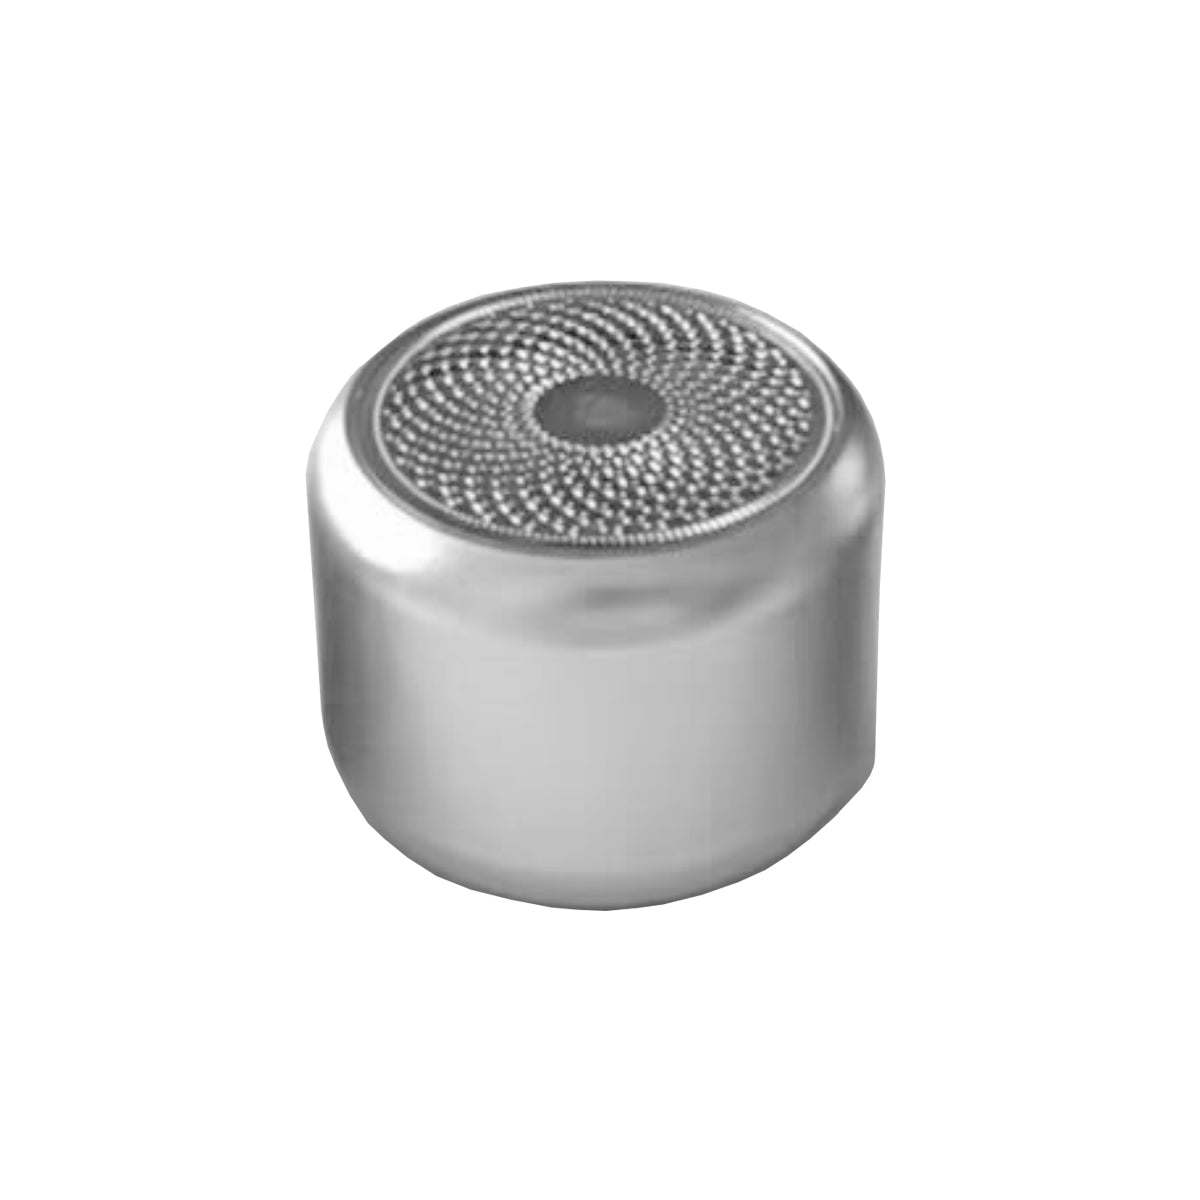 Metallio Bluetooth Enabled Pocket Speaker